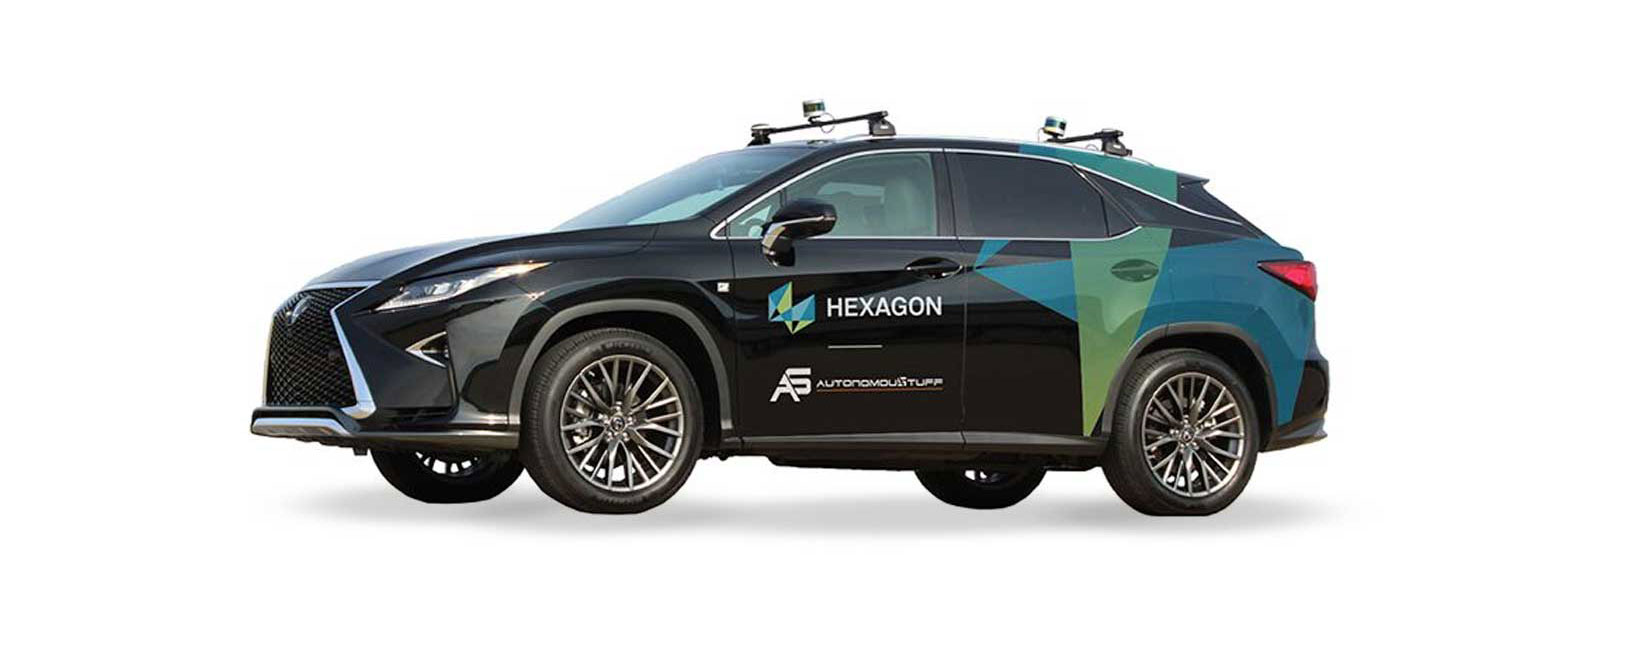 Bild eines Fahrzeugs mit autonomen Fähigkeiten mit Hexagon-Logo